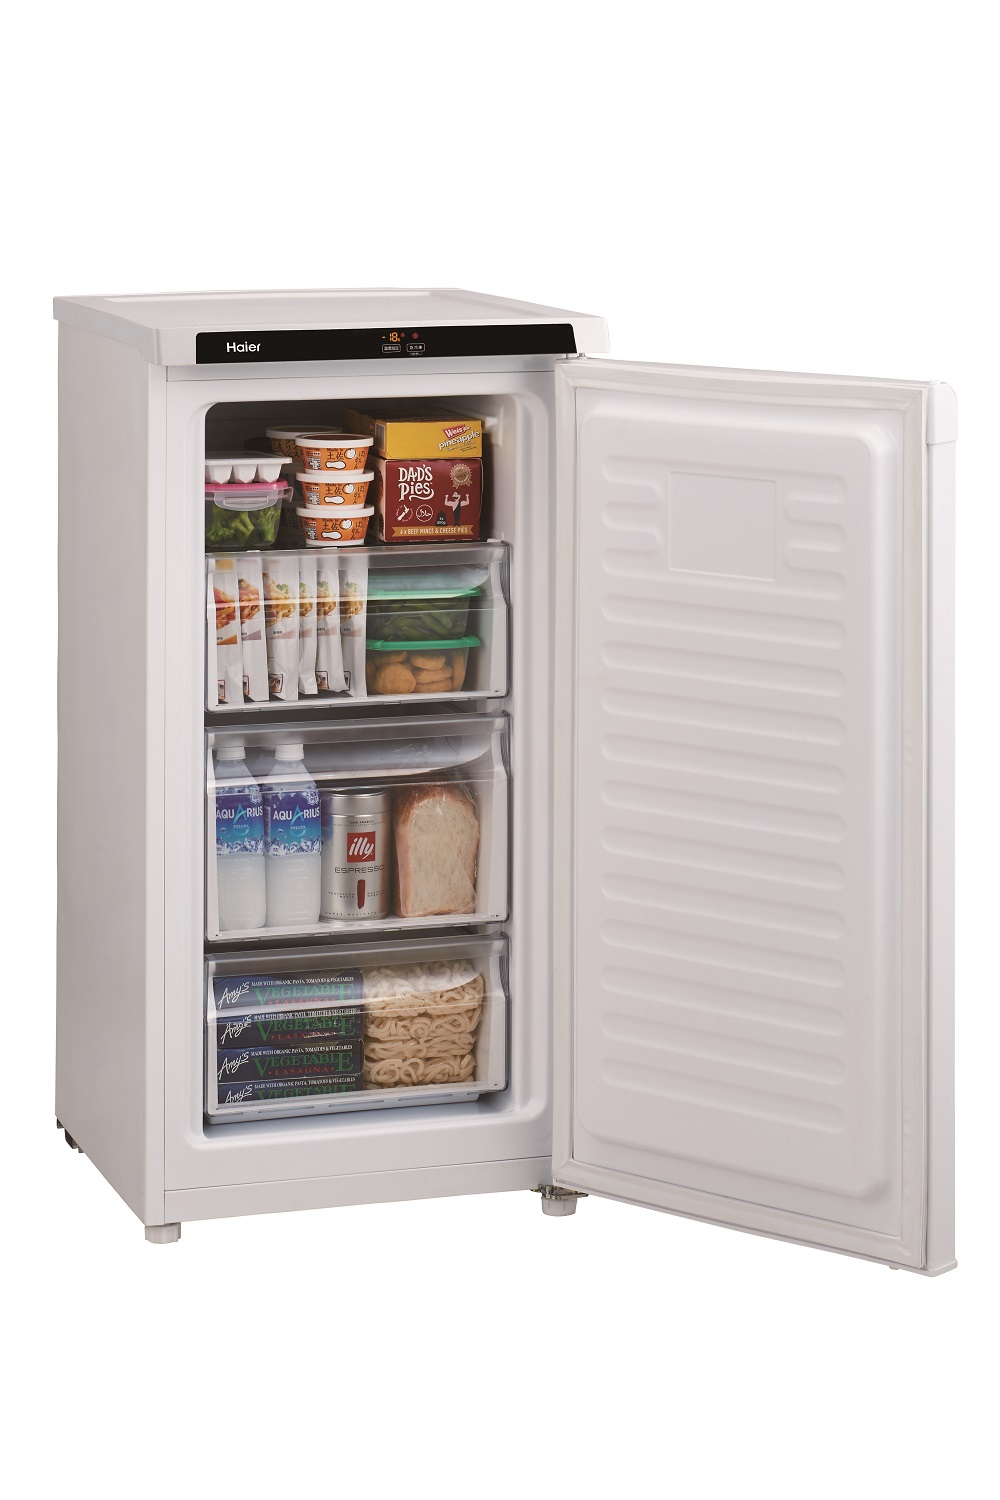 ハイアール ノンフロン2ドア冷凍冷蔵庫 セカンド冷蔵庫 電子レンジ 